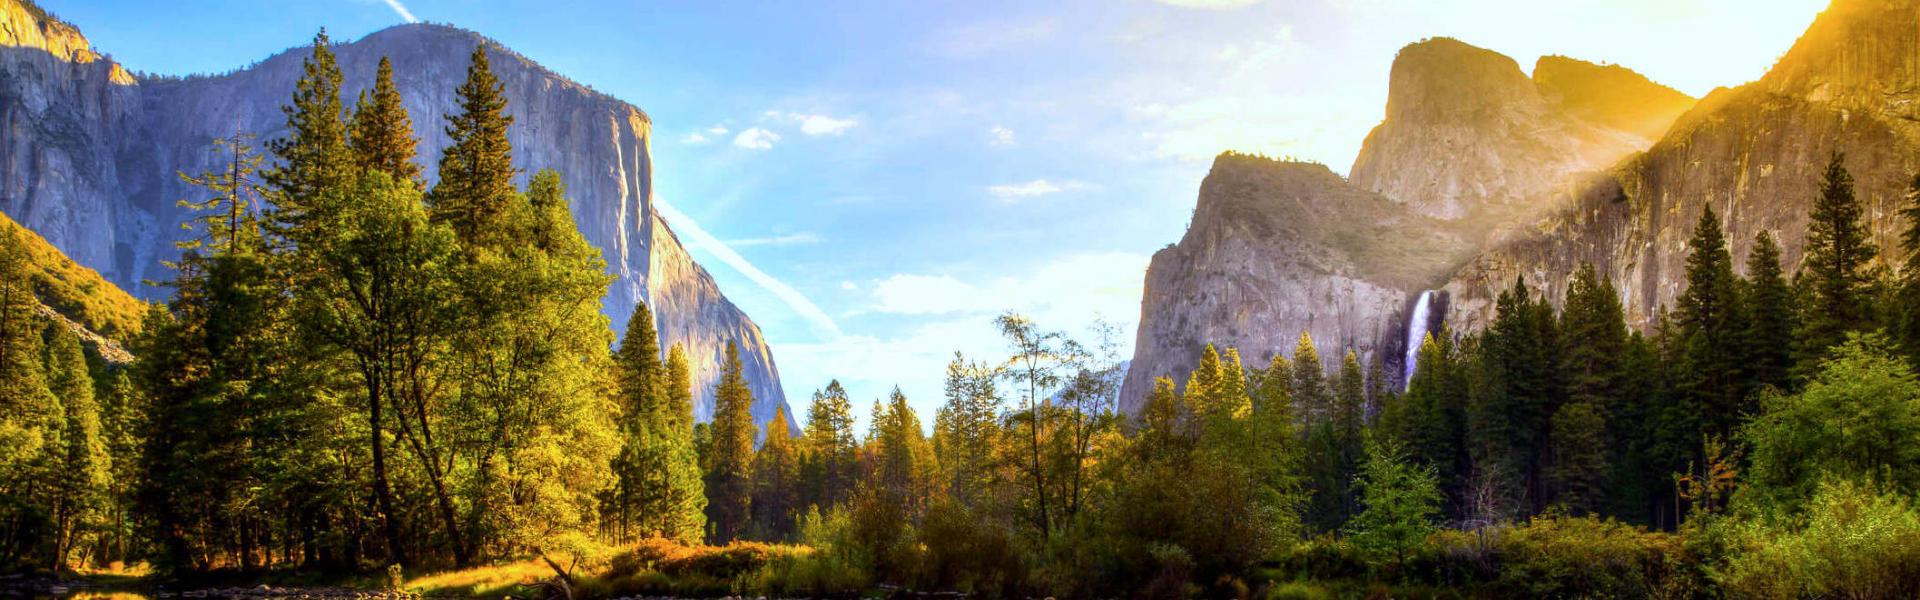 Alojamientos y apartamentos vacacionales en el Parque Nacional de Yosemite - HomeToGo